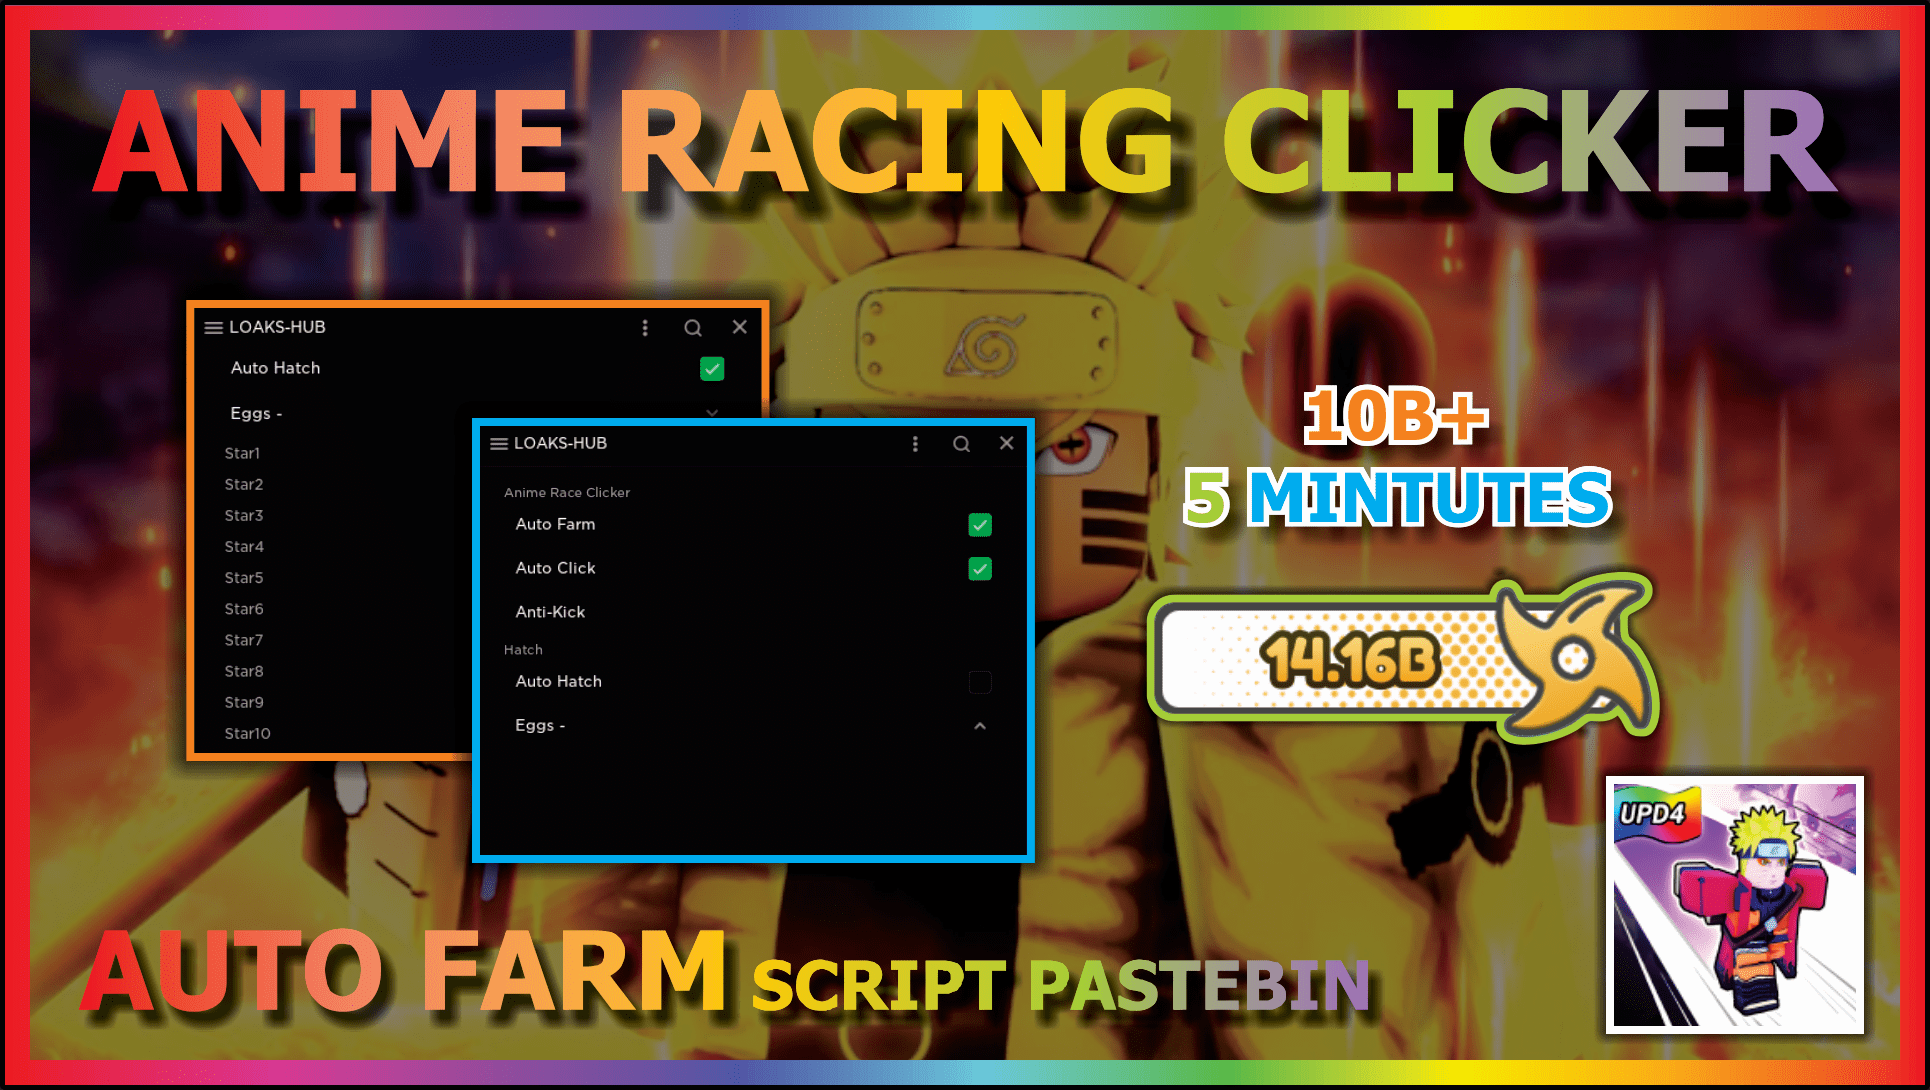 RACE CLICKER Script Pastebin 2022 AUTO FARM, AUTO CLICK